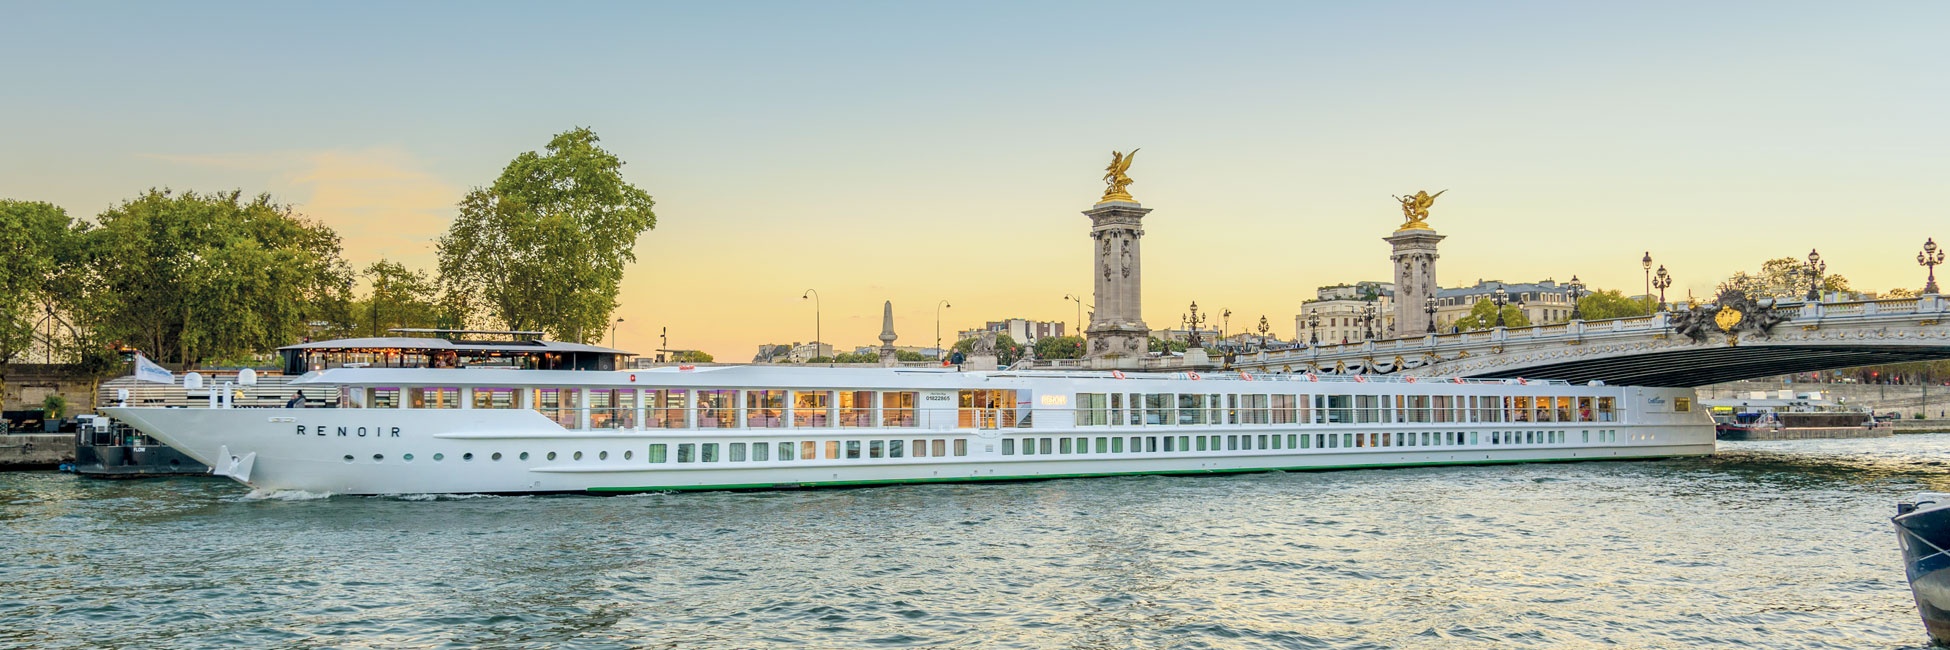 river cruises 2022 europe